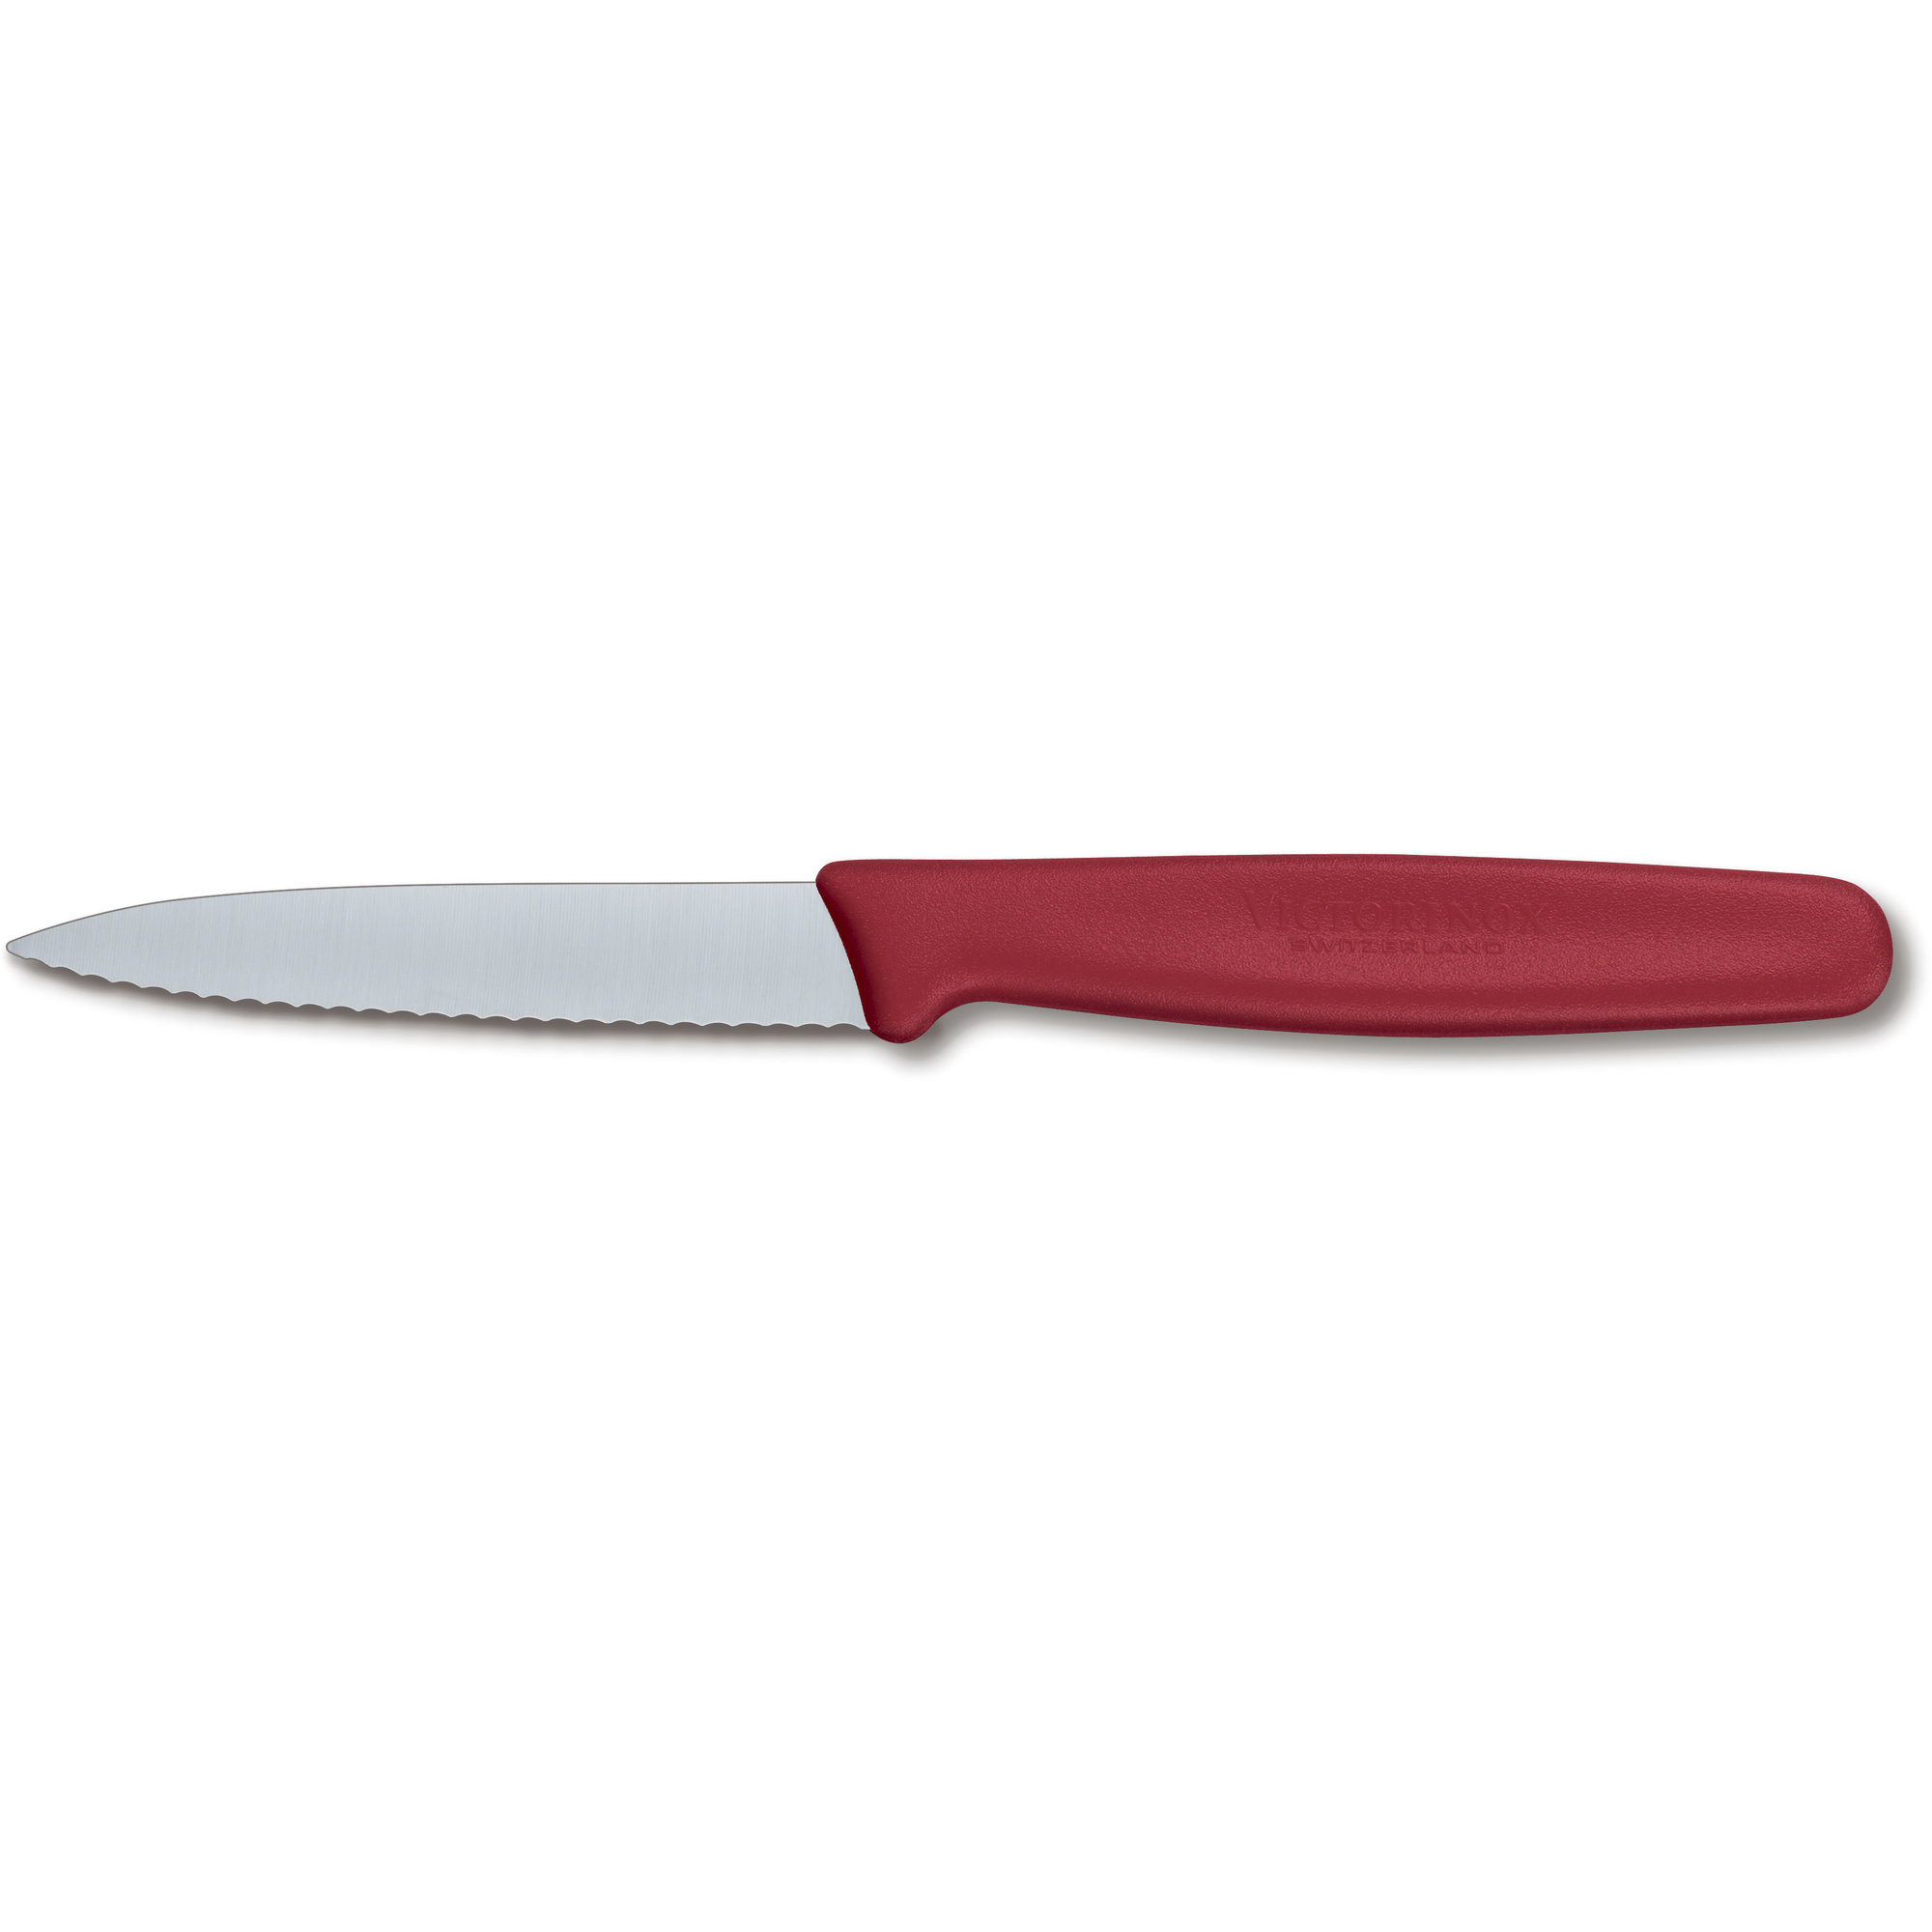 Victorinox Spids og takket urtekniv med nylonskæfte i rød 8cm.